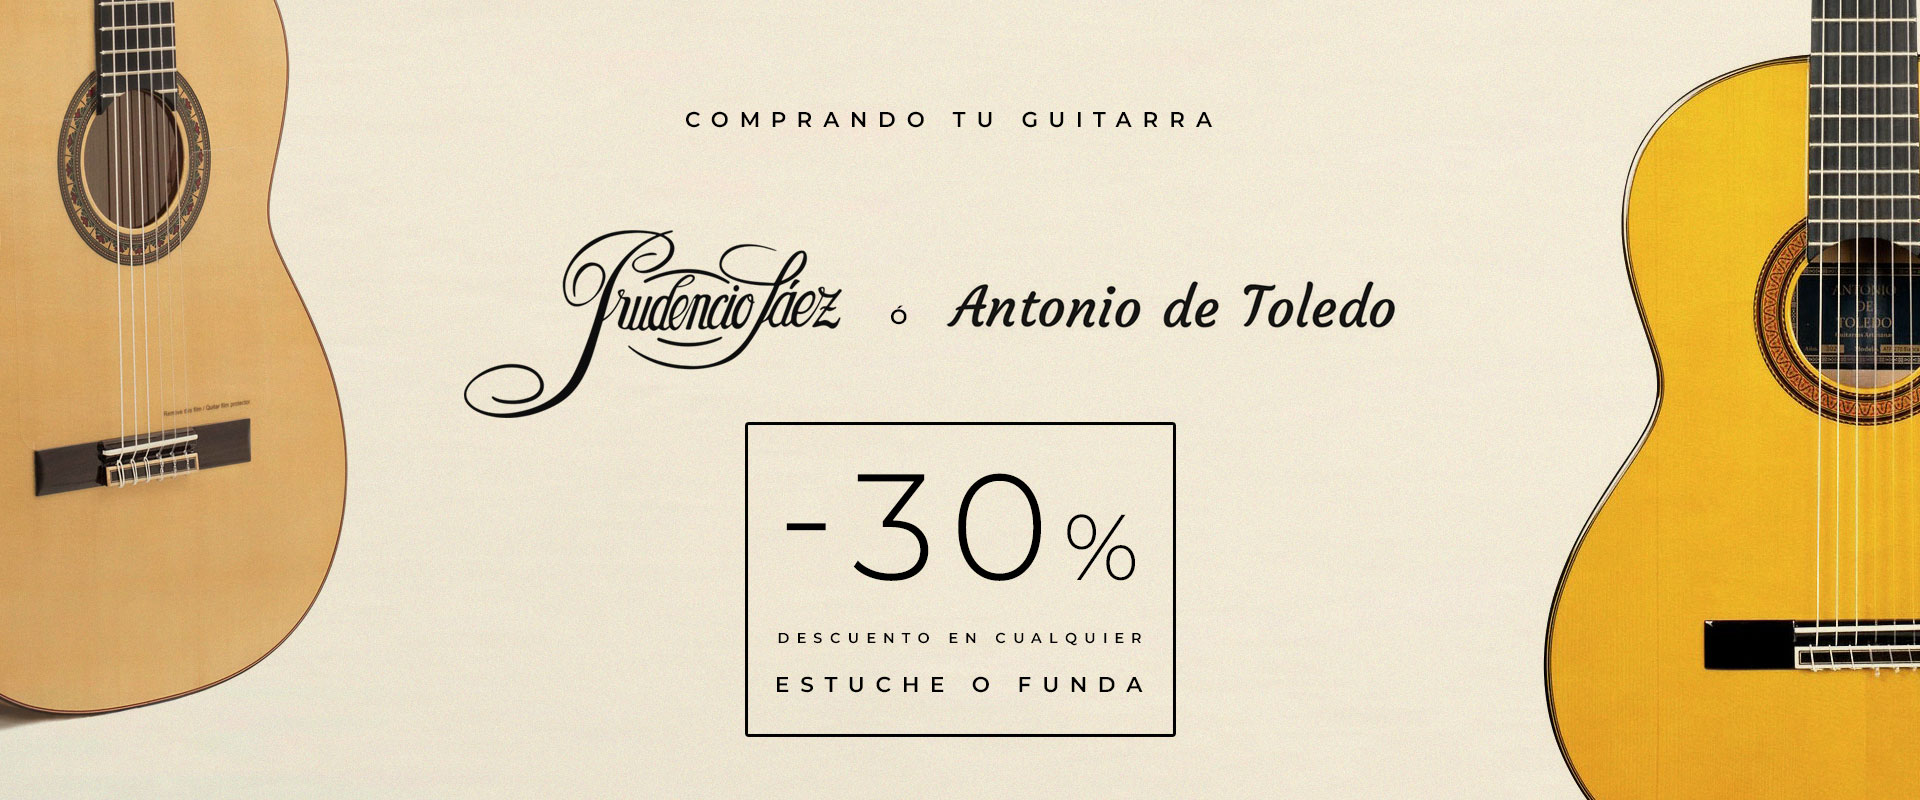 Promocion guitarras Antonio de Toledo